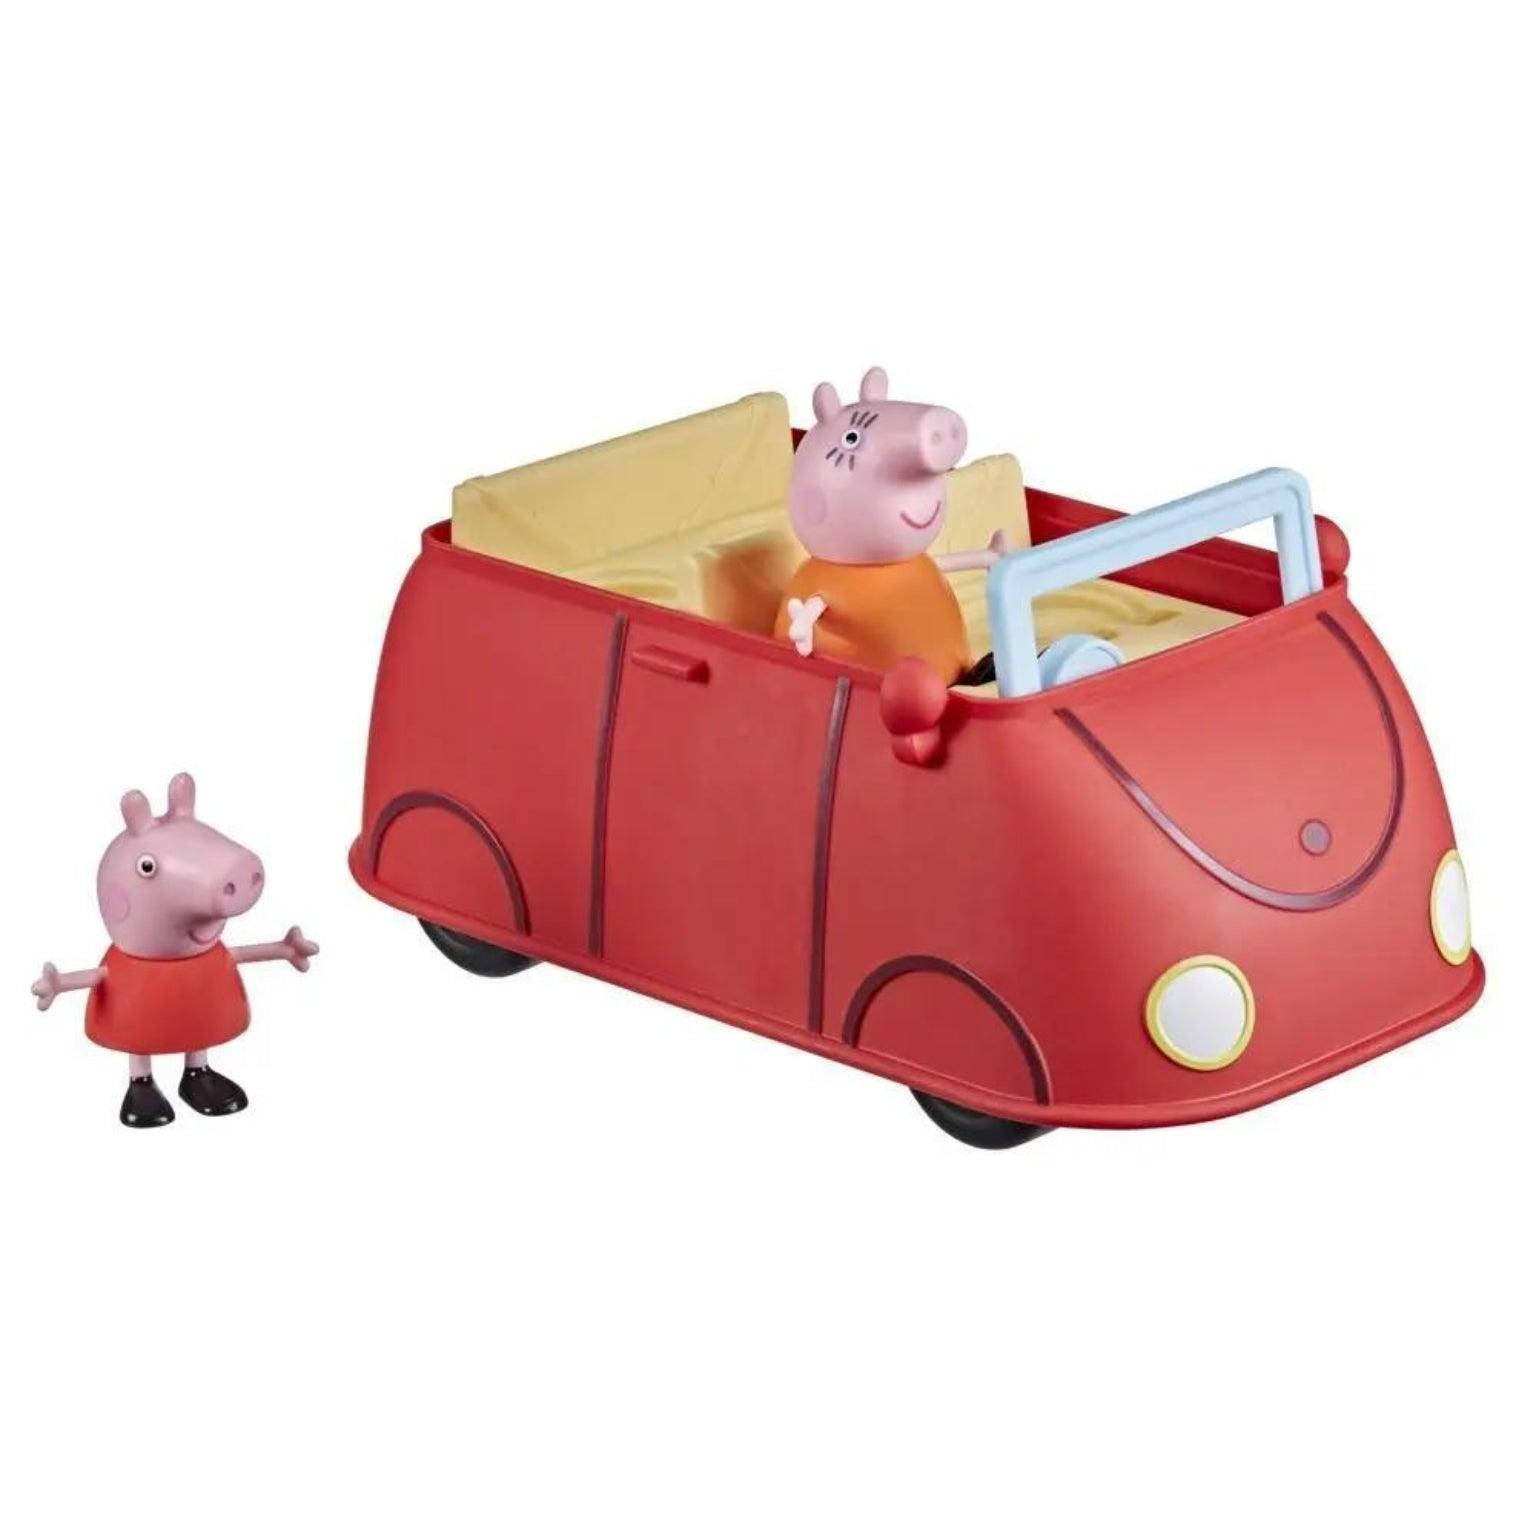 O Carro Vermelho da Peppa Pig - Brincatoys